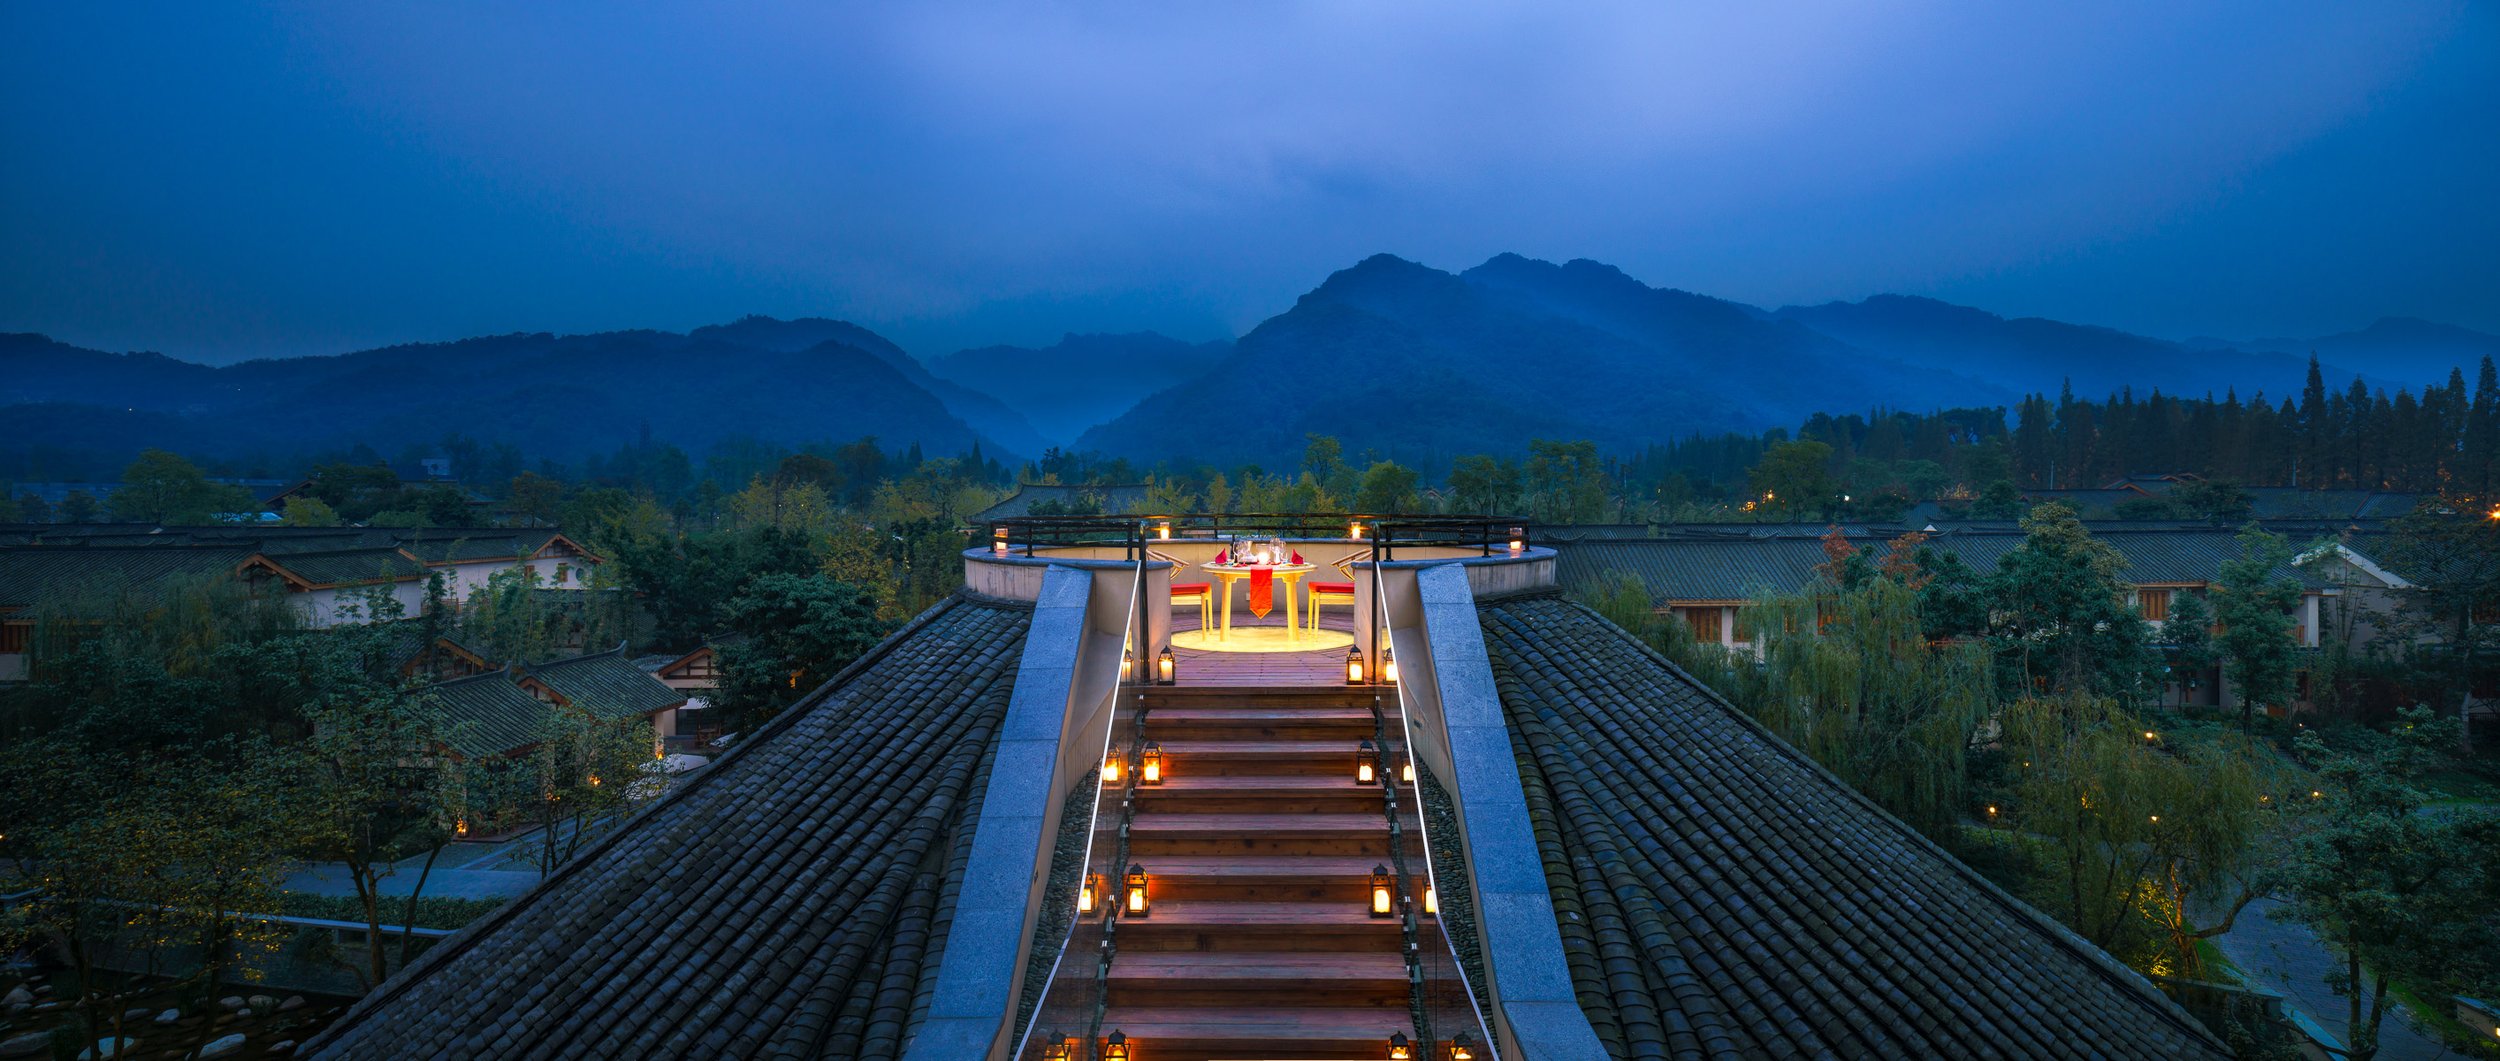 Six Senses Qing Cheng Mountain